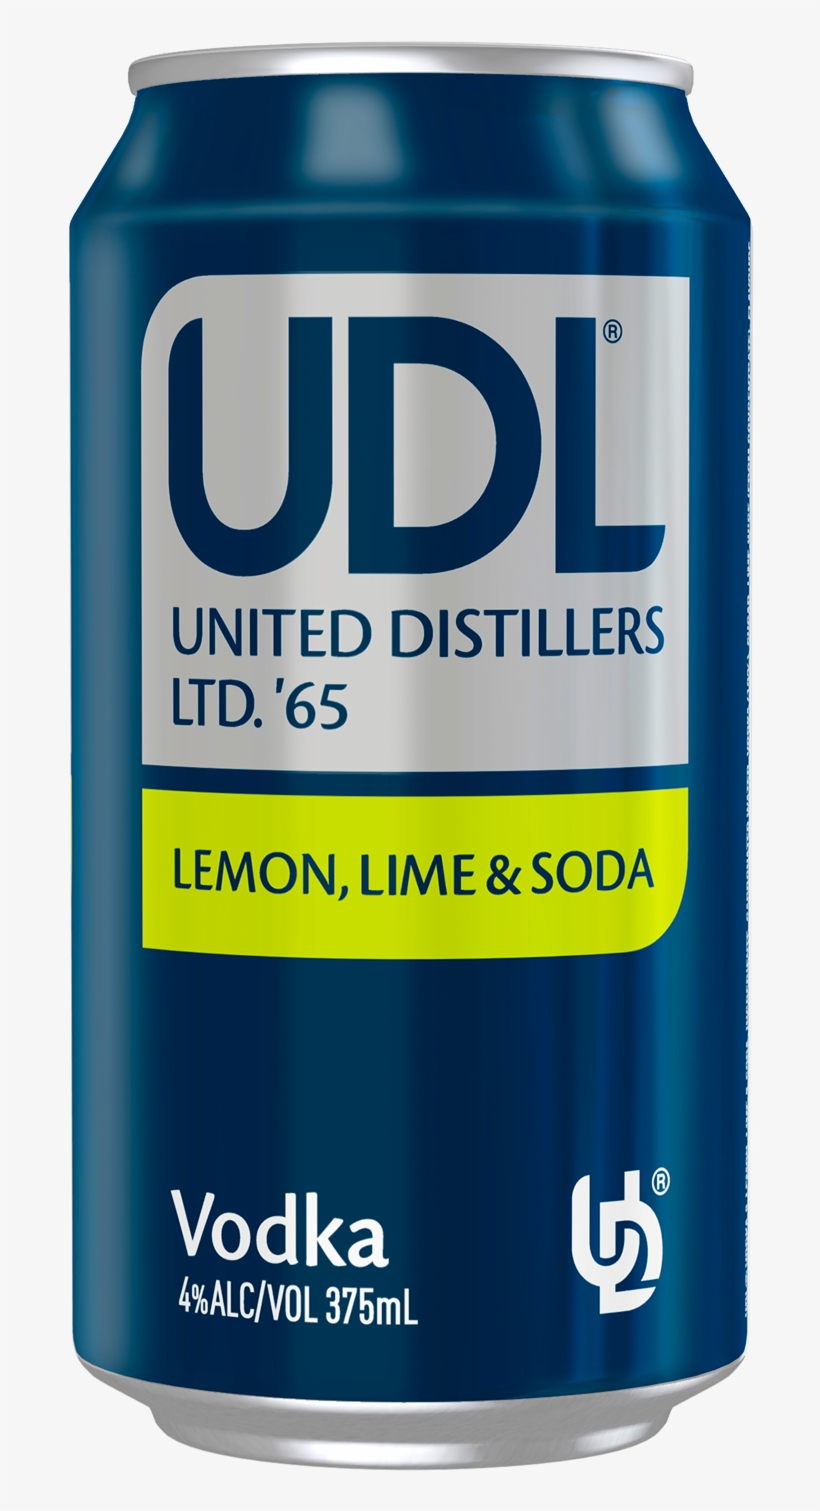 Udl Vodka Lemon Lime & Soda Cans 375ml - Udl Vodka Lemon Lime & Soda Cans, transparent png #804861